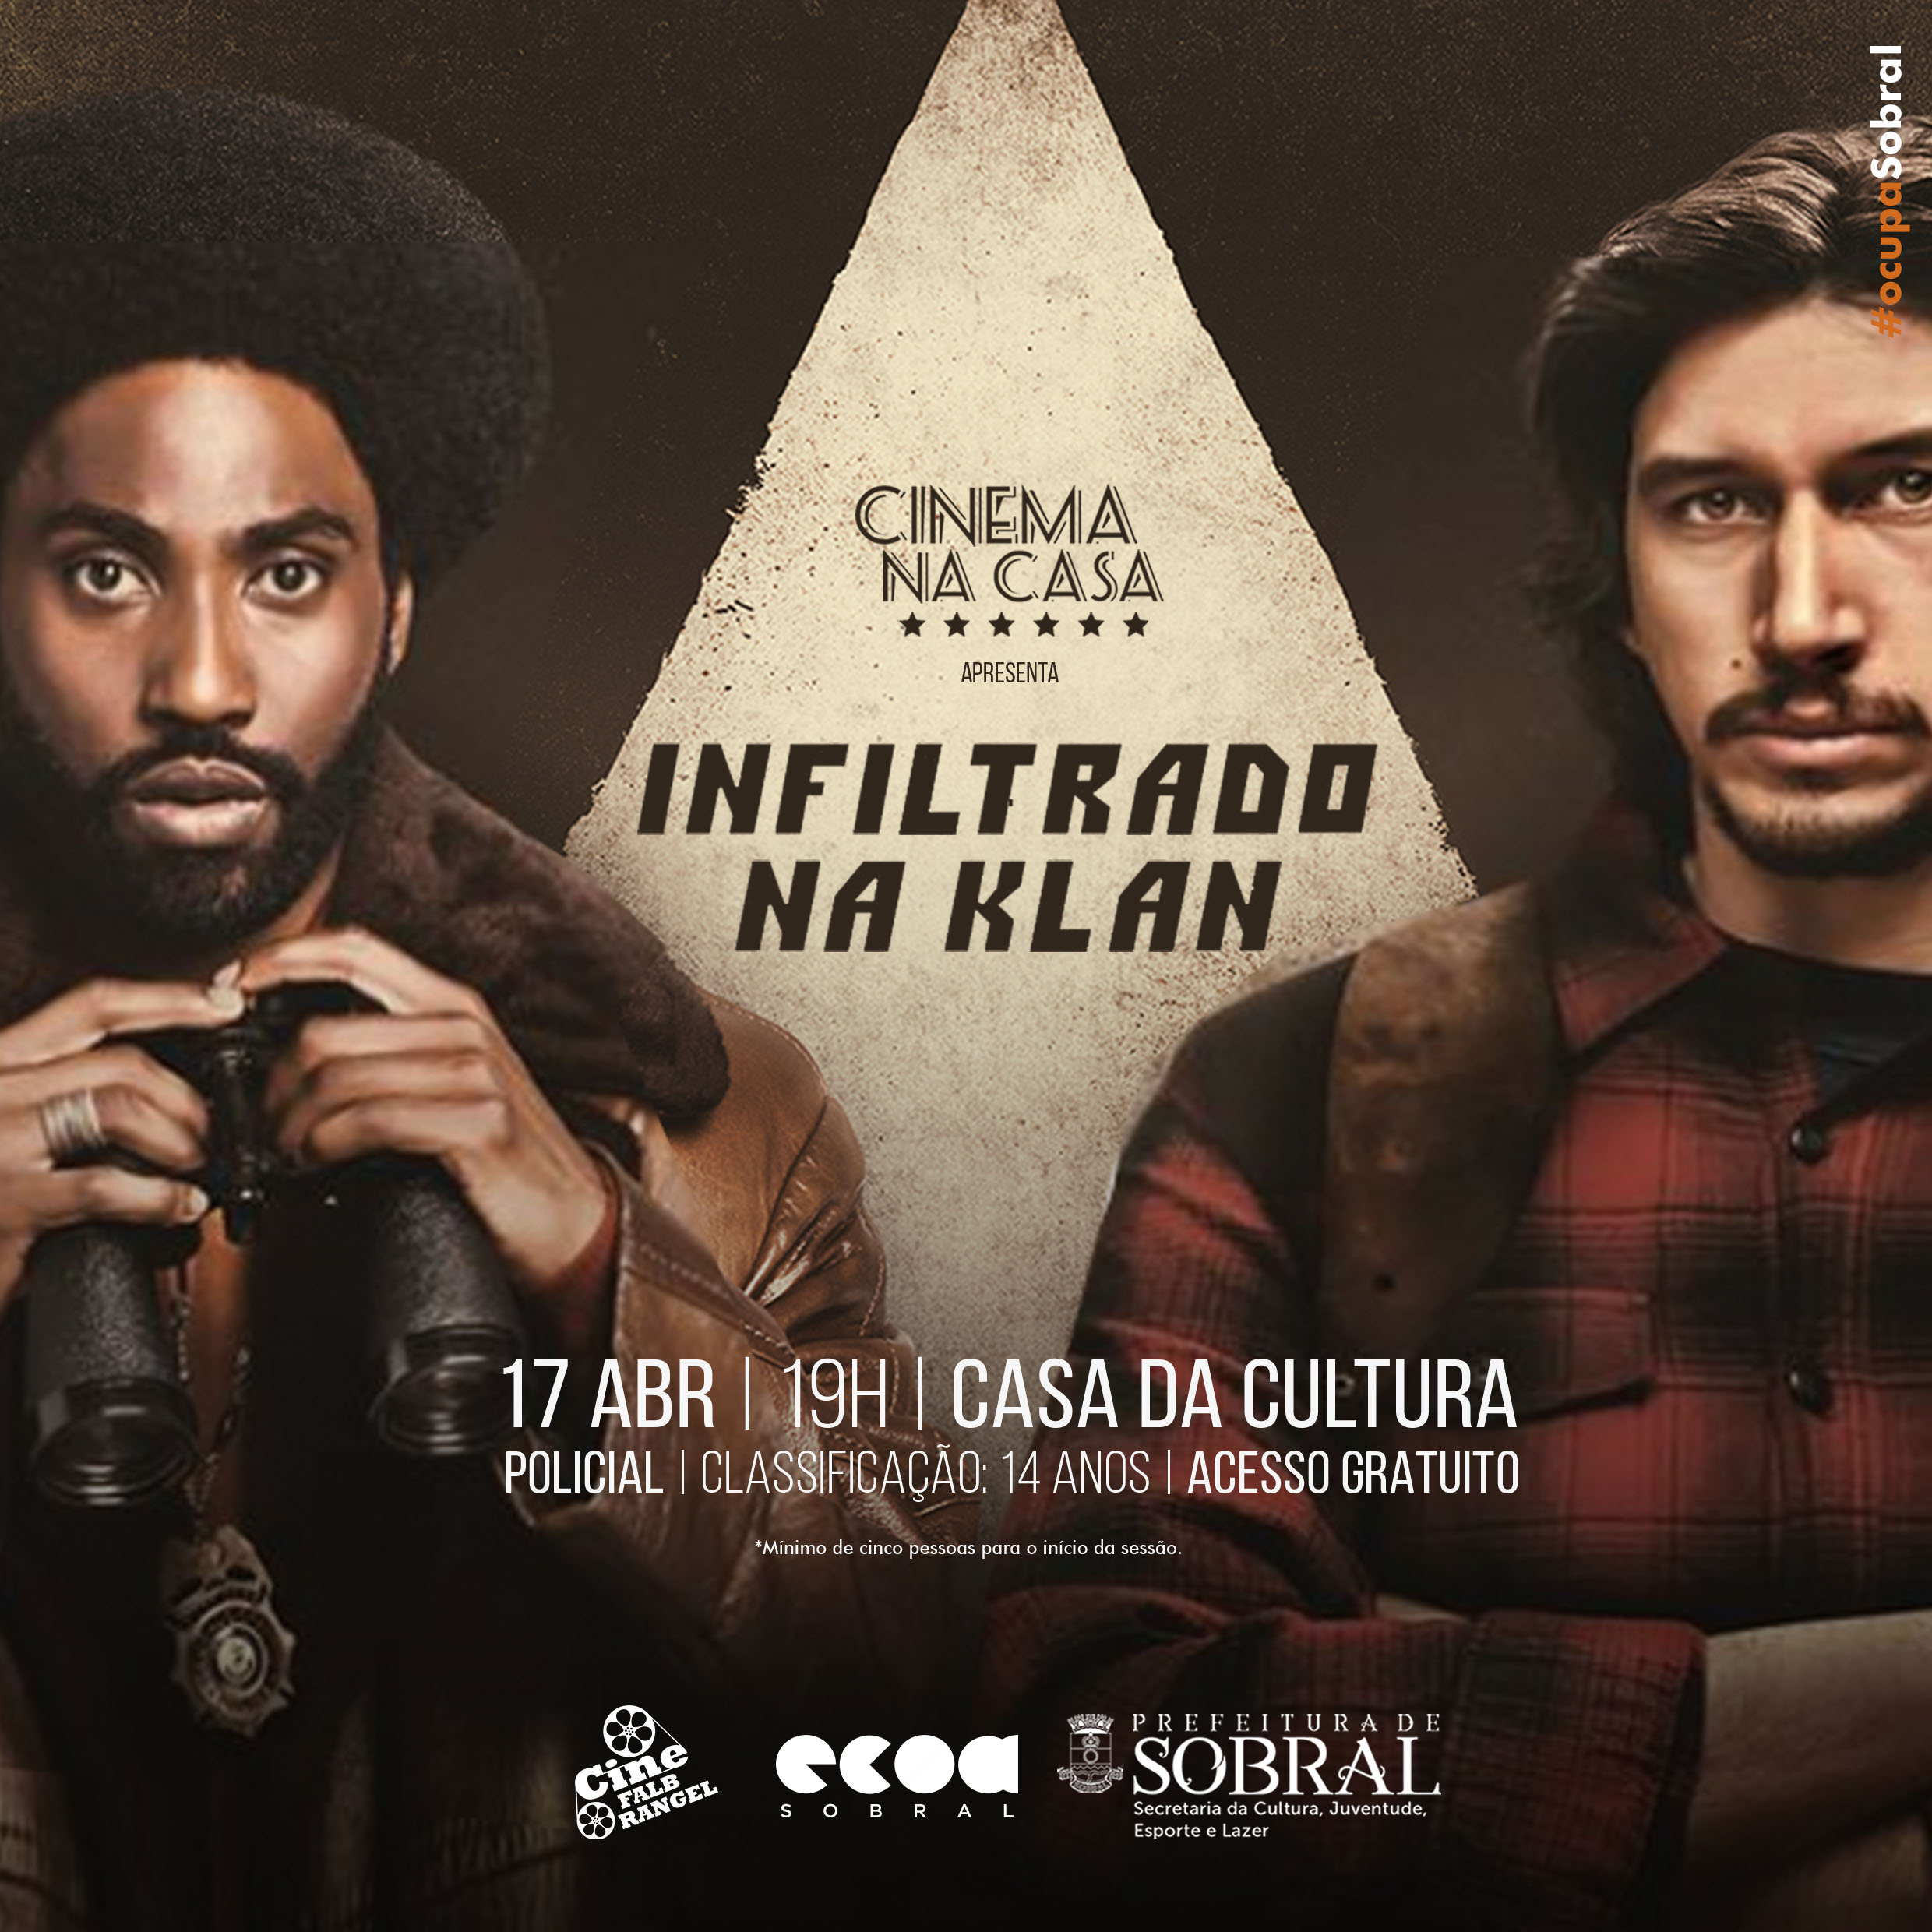 Prefeitura de Sobral - Cinema na Casa exibe o filme Infiltrado na Klan nesta quarta-feira (17/04)